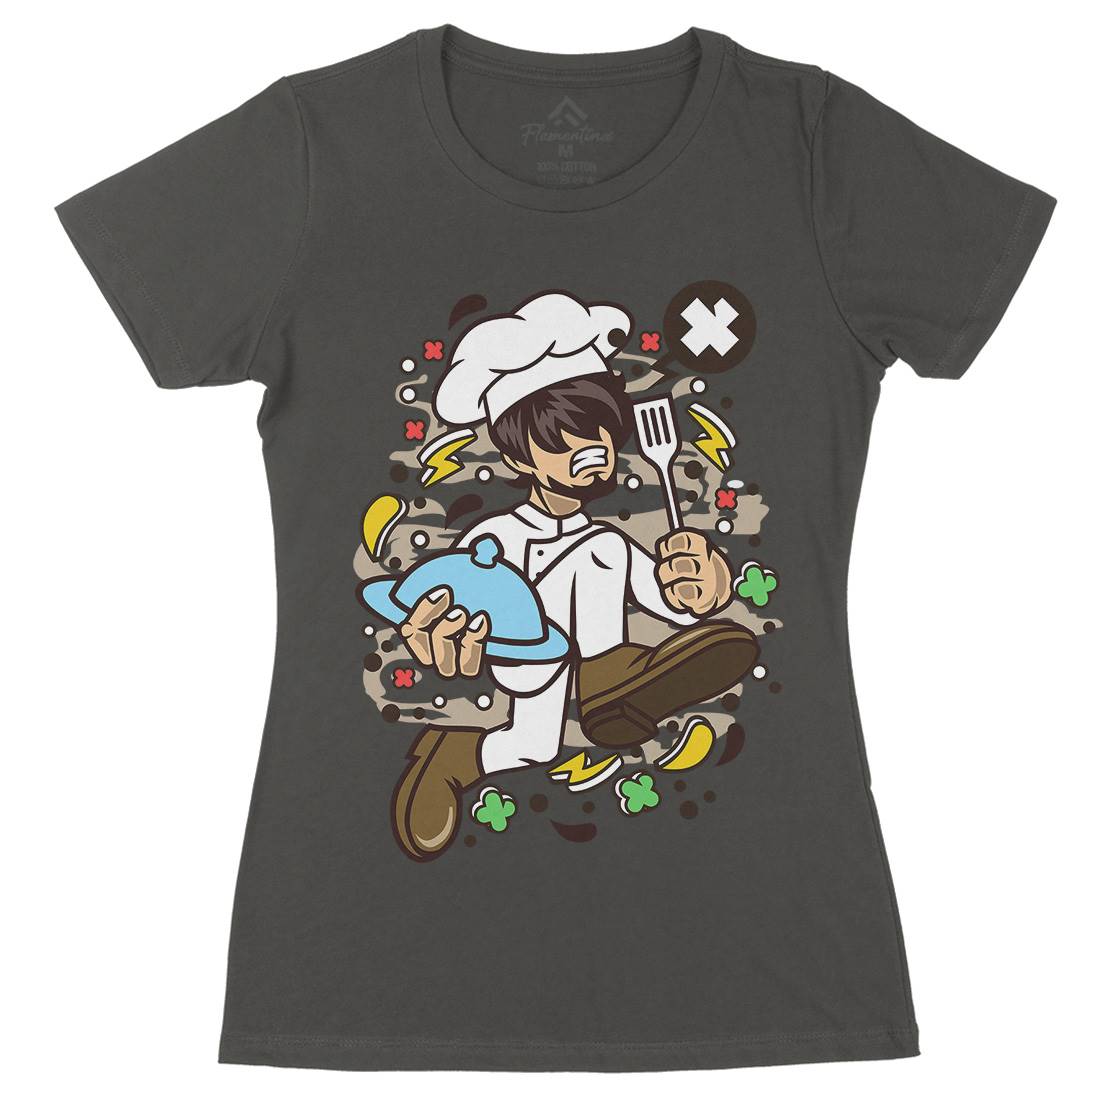 Chef Running Womens Organic Crew Neck T-Shirt Work C515